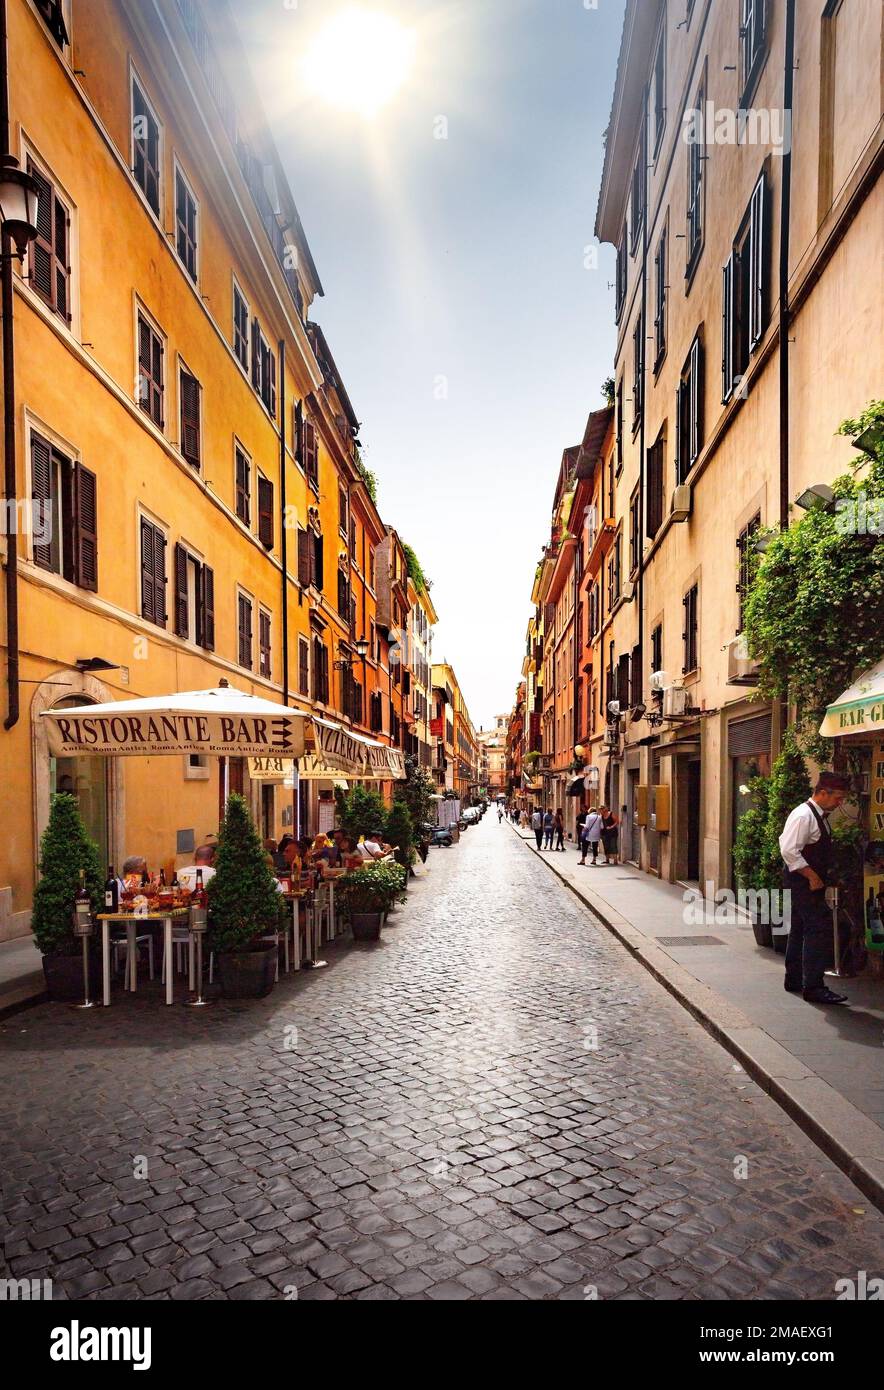 ITALIEN, ROM - 05. Mai 2015: Straßen von Rom mit Menschen, die sich täglich für Aktivitäten, Cafés und Geschäfte engagieren. Stockfoto